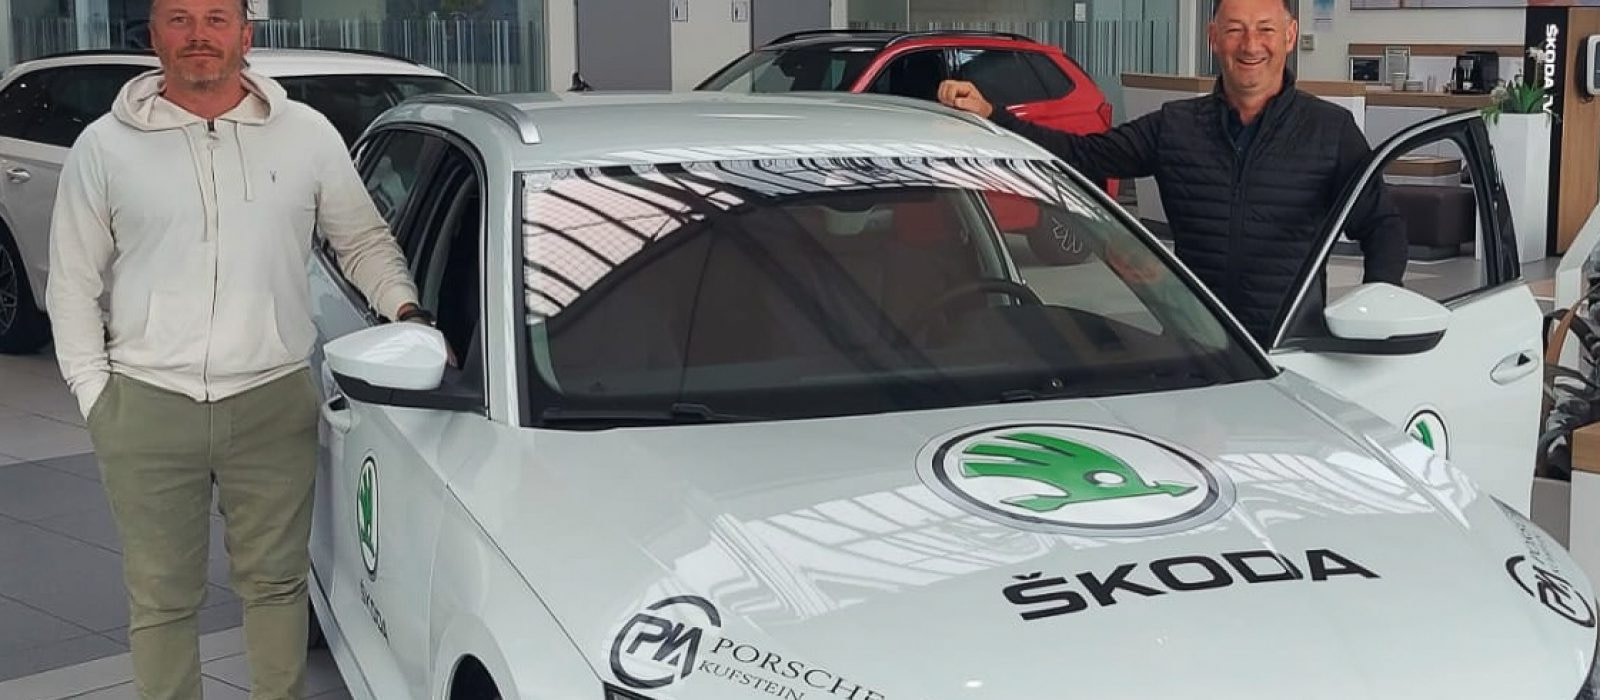 Ivo Novotny und Heinrich Horn mit neuem Skoda Octavia Vereinsauto von Porsche Kufstein